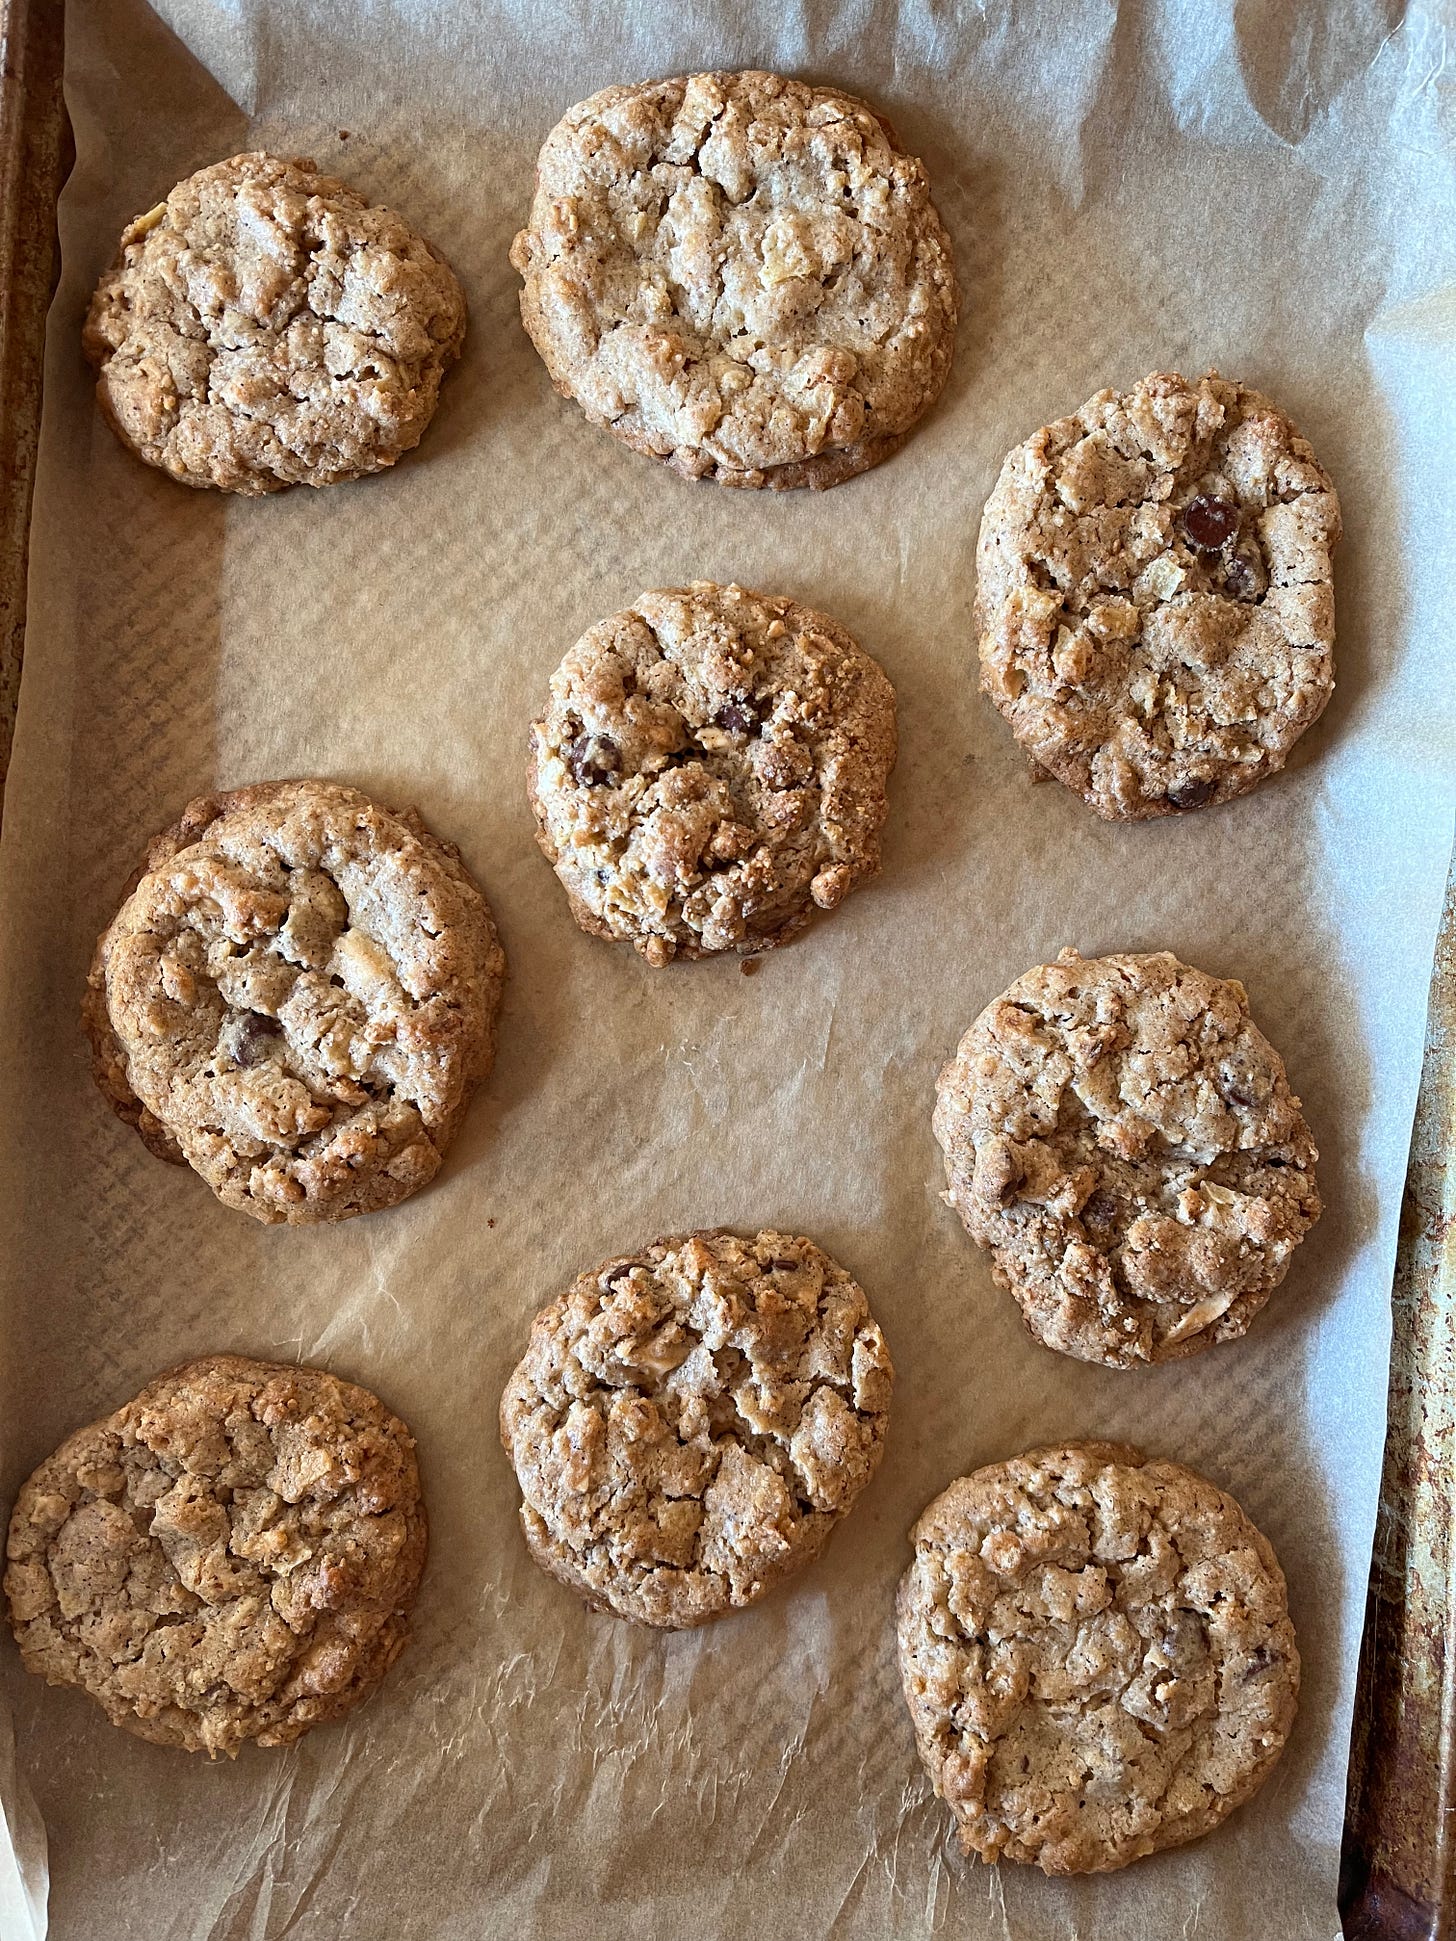 Freshly baked cookies on a sheet pan.